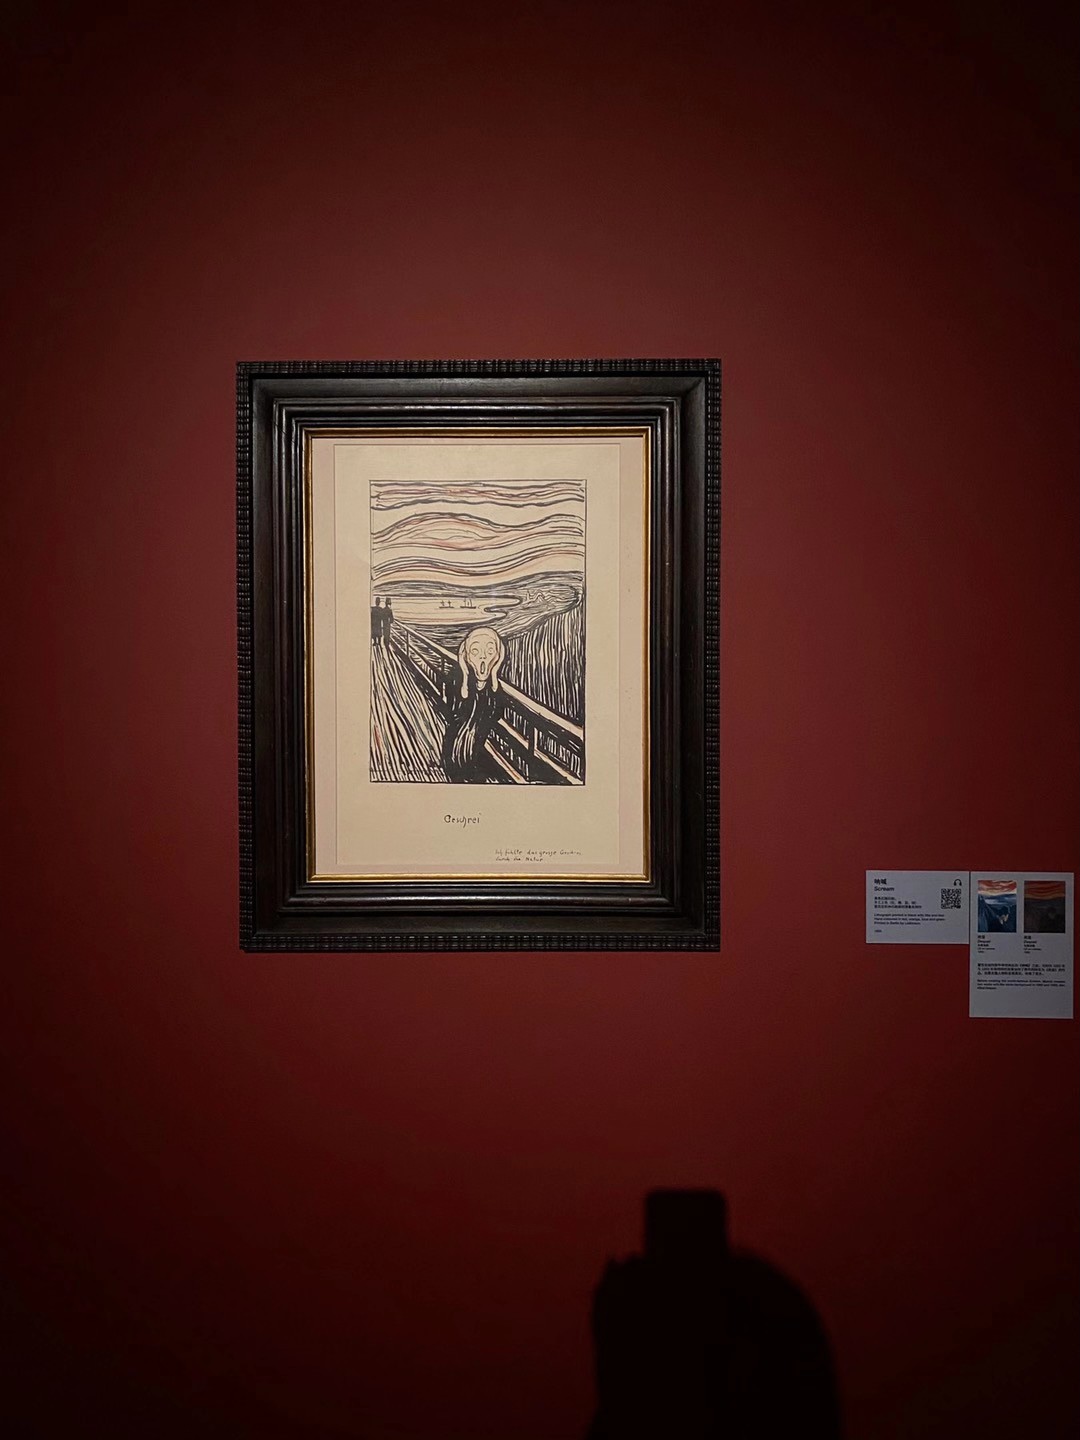 上海久事美术馆“呐喊与回响——爱德华·蒙克版画及油画展 （2020冈德森收藏）”中一件《呐喊》版画